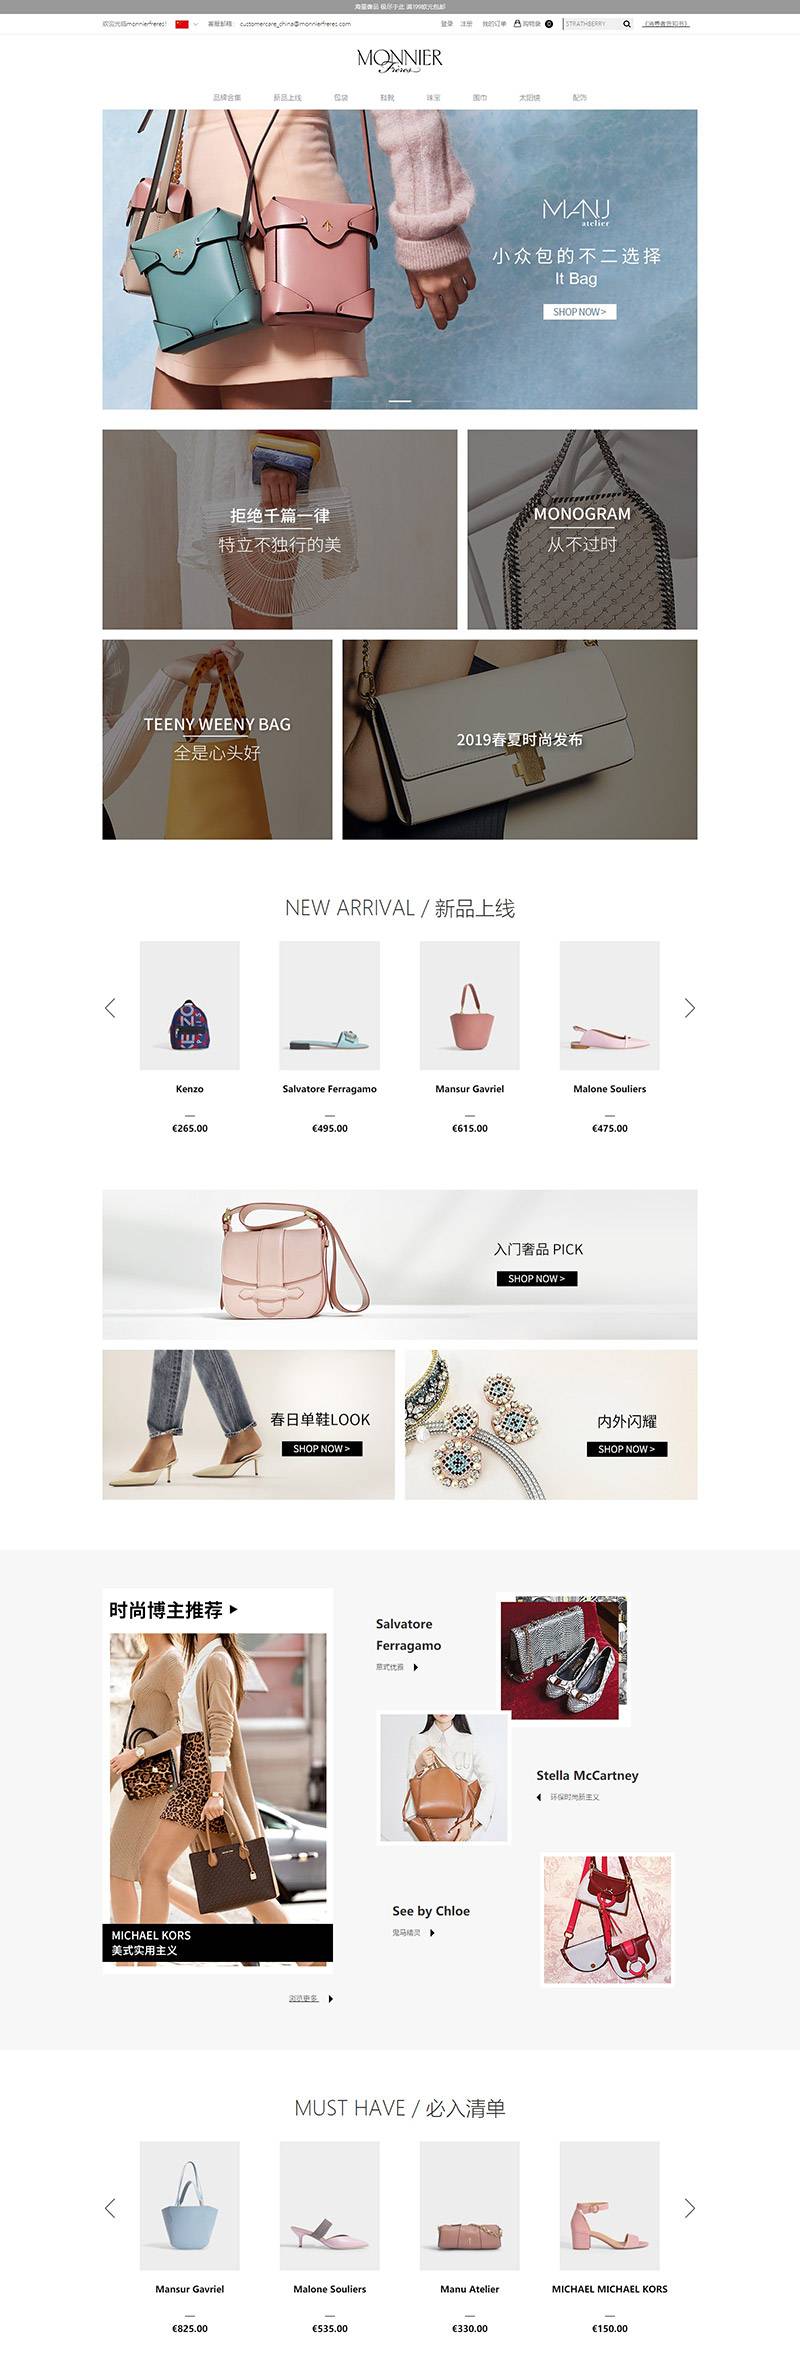 Monnier Freres 法国鞋包配饰品牌购物中文网站